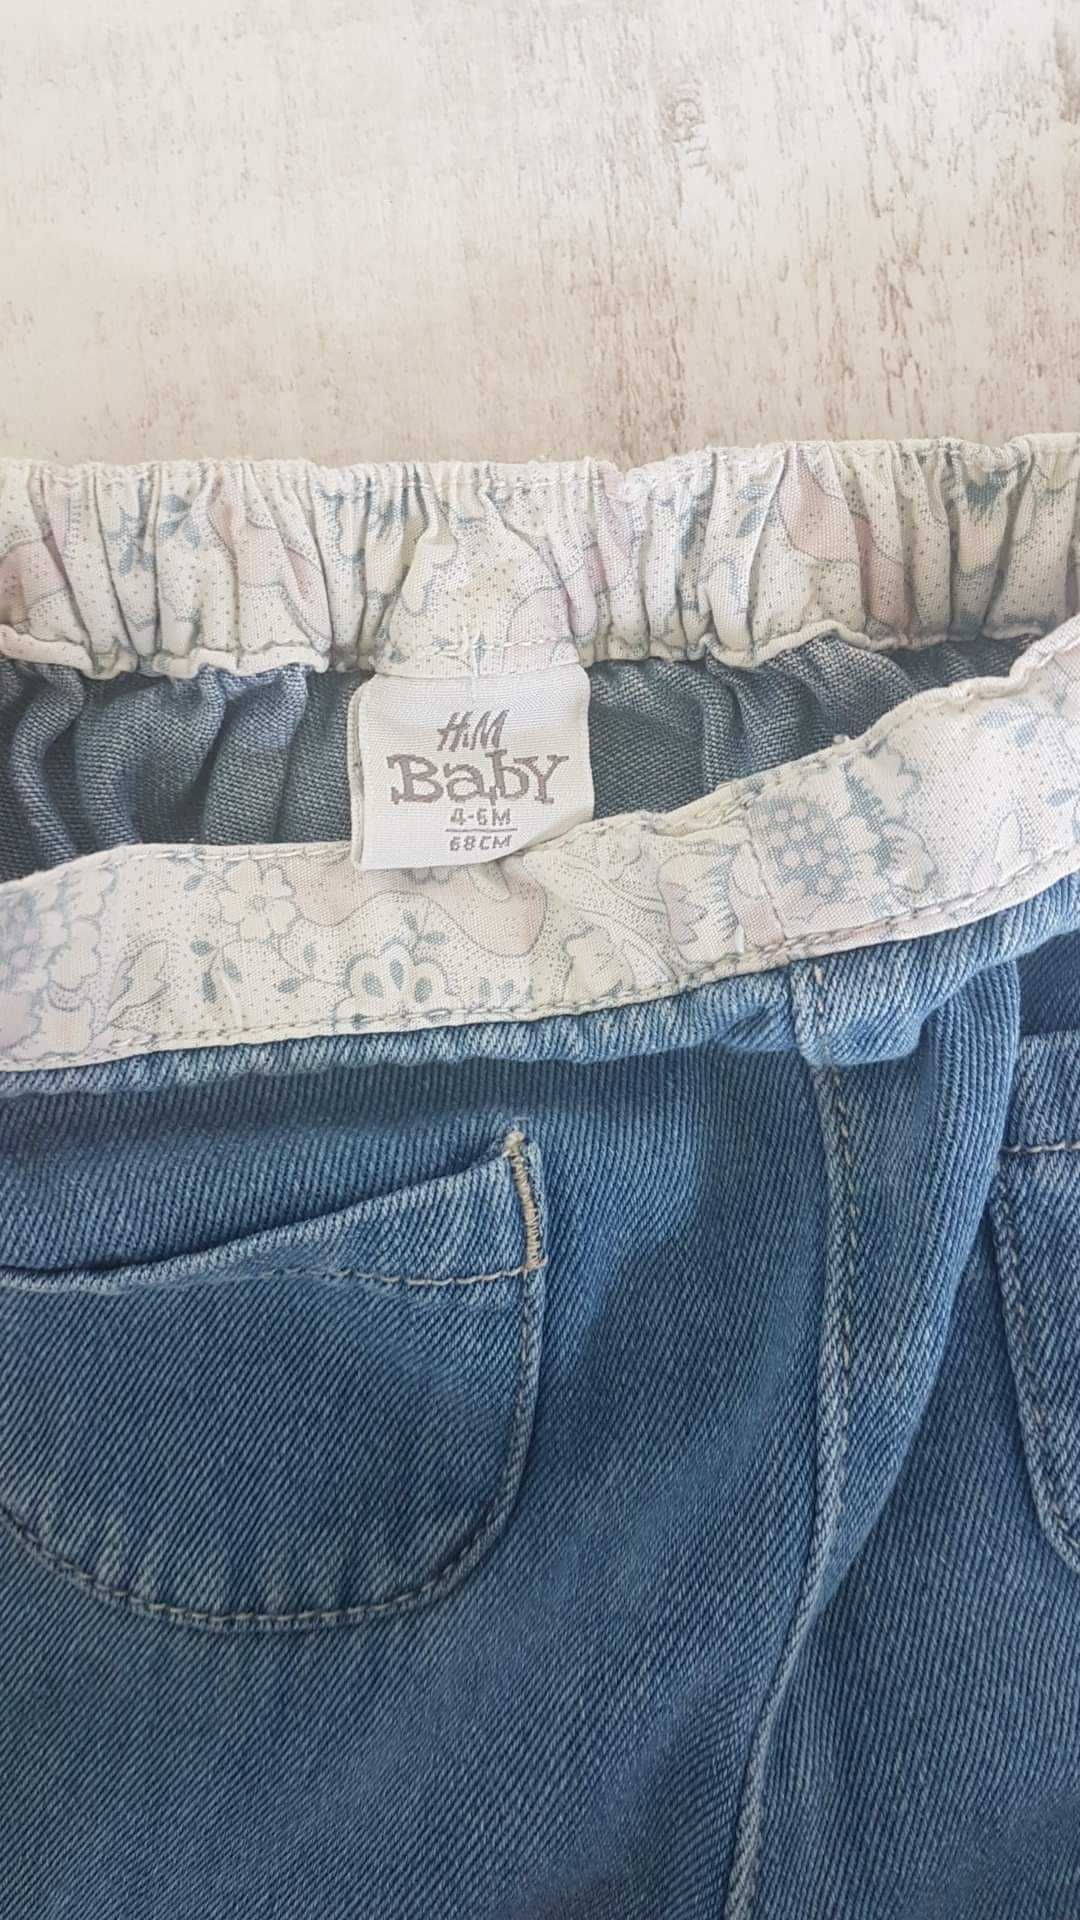 Spodnie jeansowe na gumce h&m baby rozmiar 68